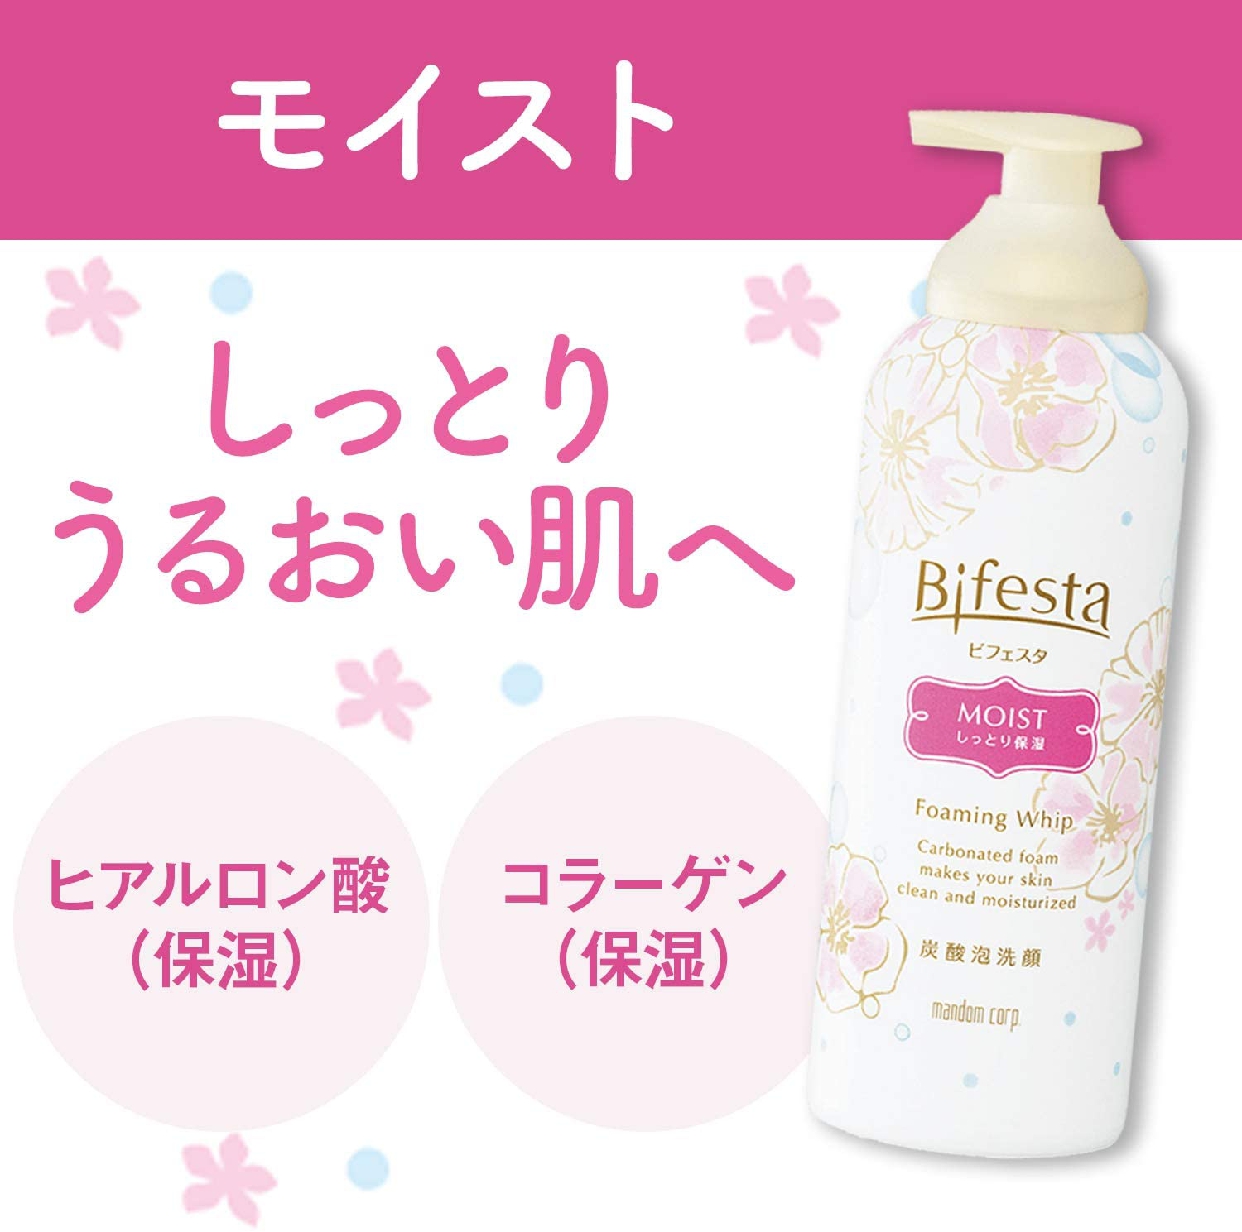 Bifesta(ビフェスタ) 泡洗顔 モイストの商品画像4 